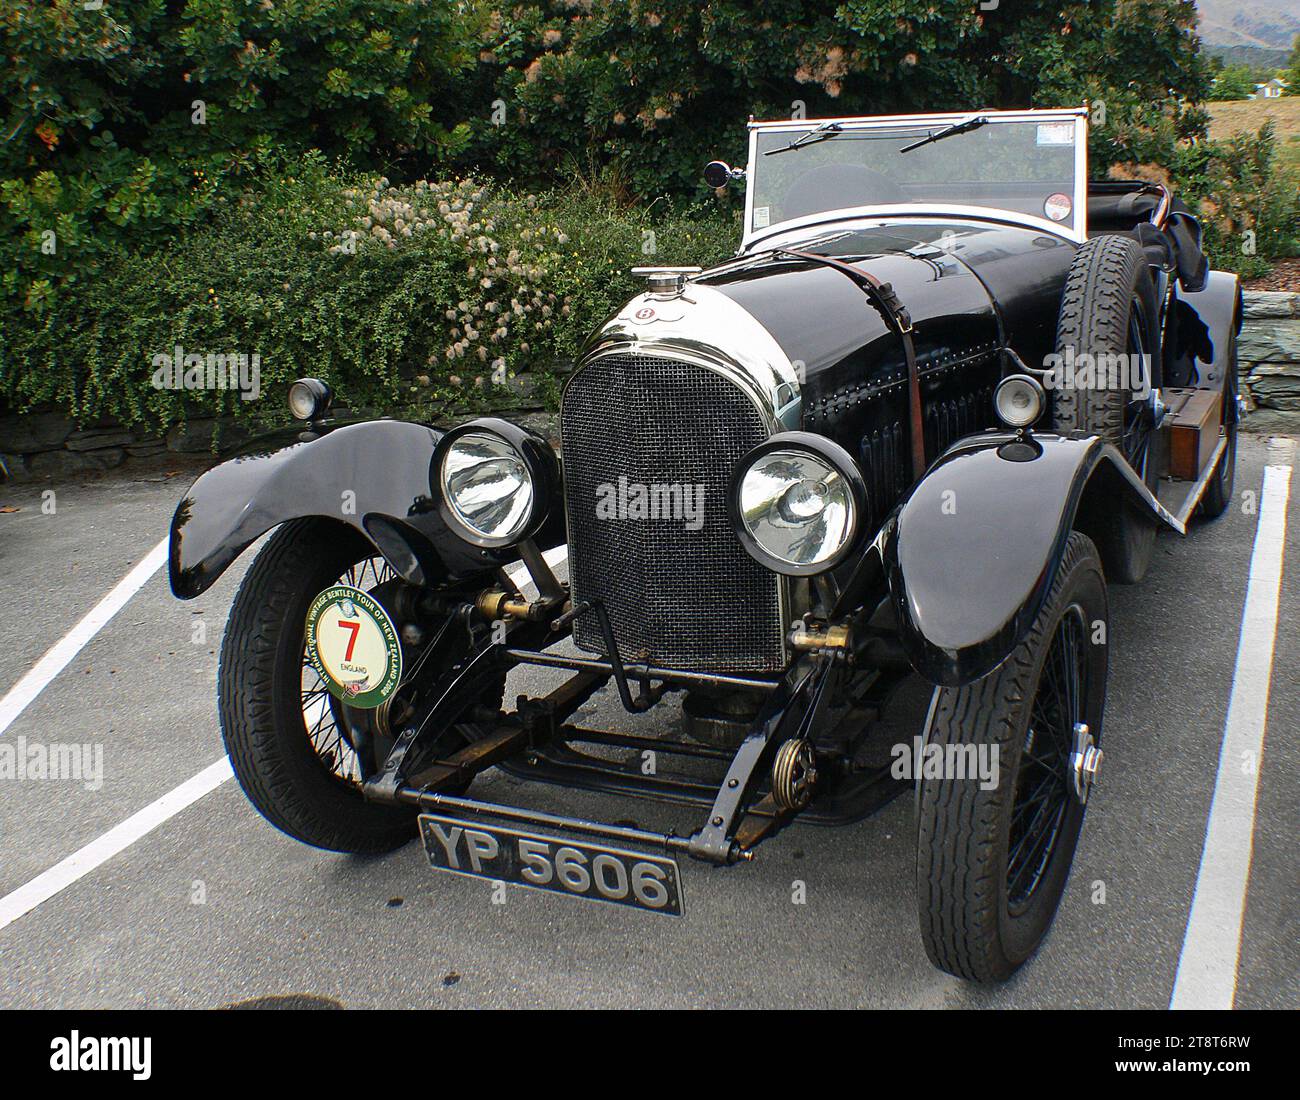 1926 3,0 LTR Bentley, en 12 courtes années, Bentley est devenue l'une des marques les plus vénérées de Grande-Bretagne grâce à la sophistication technique de ses voitures et son record enviable dans les épreuves de course de longue distance, y compris la victoire cinq fois de la course des 24 heures du Mans Banque D'Images